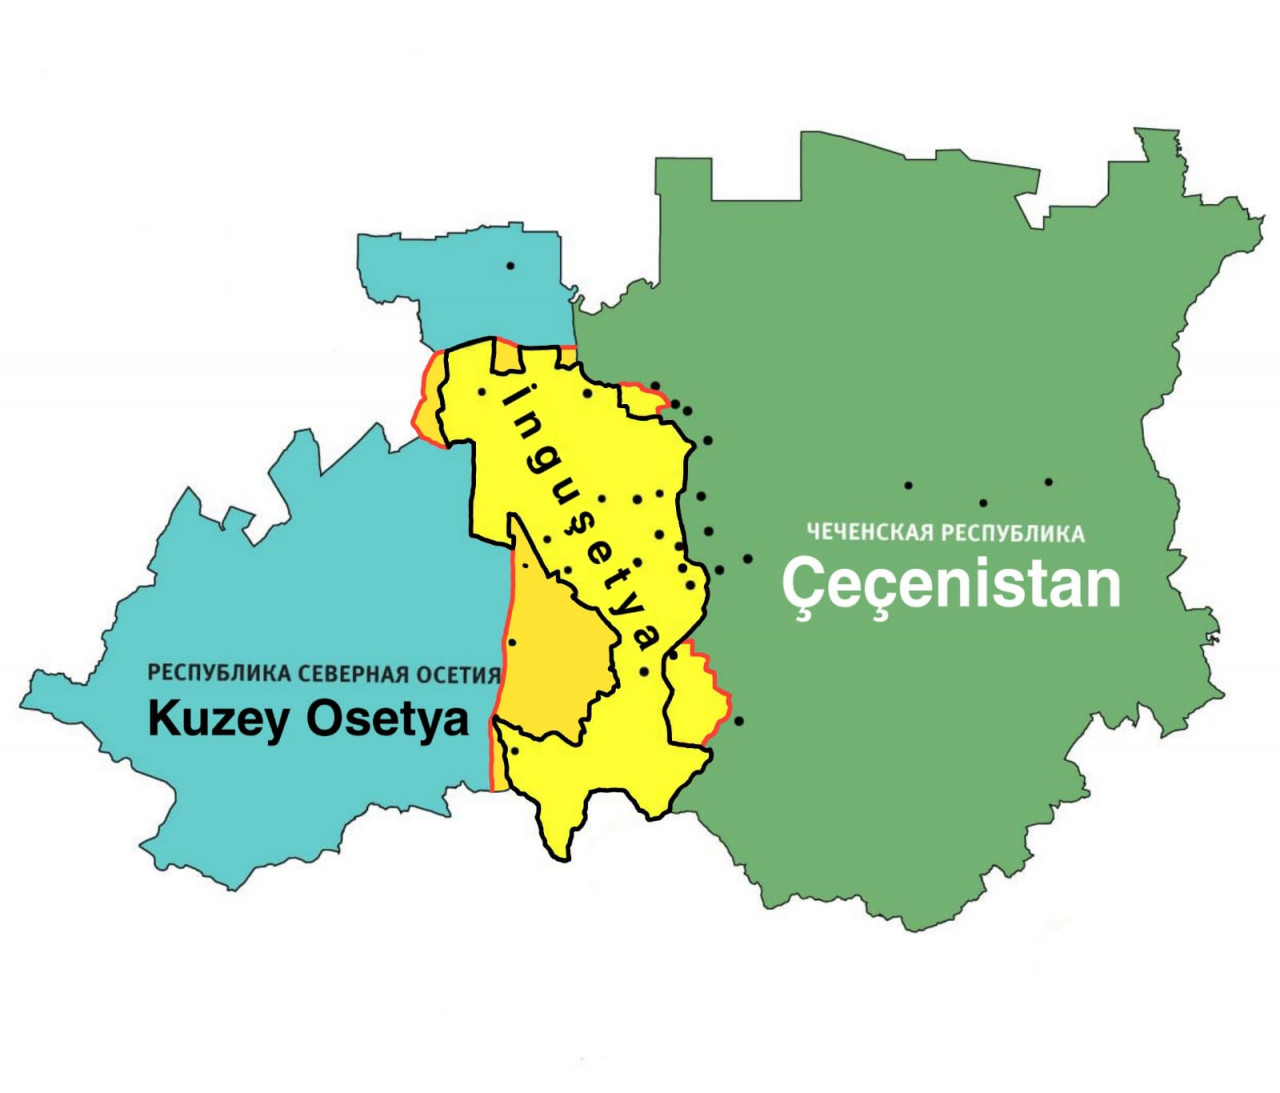 Земли чеченцев. Граница между Чечней и Ингушетией 2018. Граница Чечни и Ингушетии после 2018 года на карте. Чечня и Ингушетия на карте. Граница между Ингушетией и Чечней на карте.